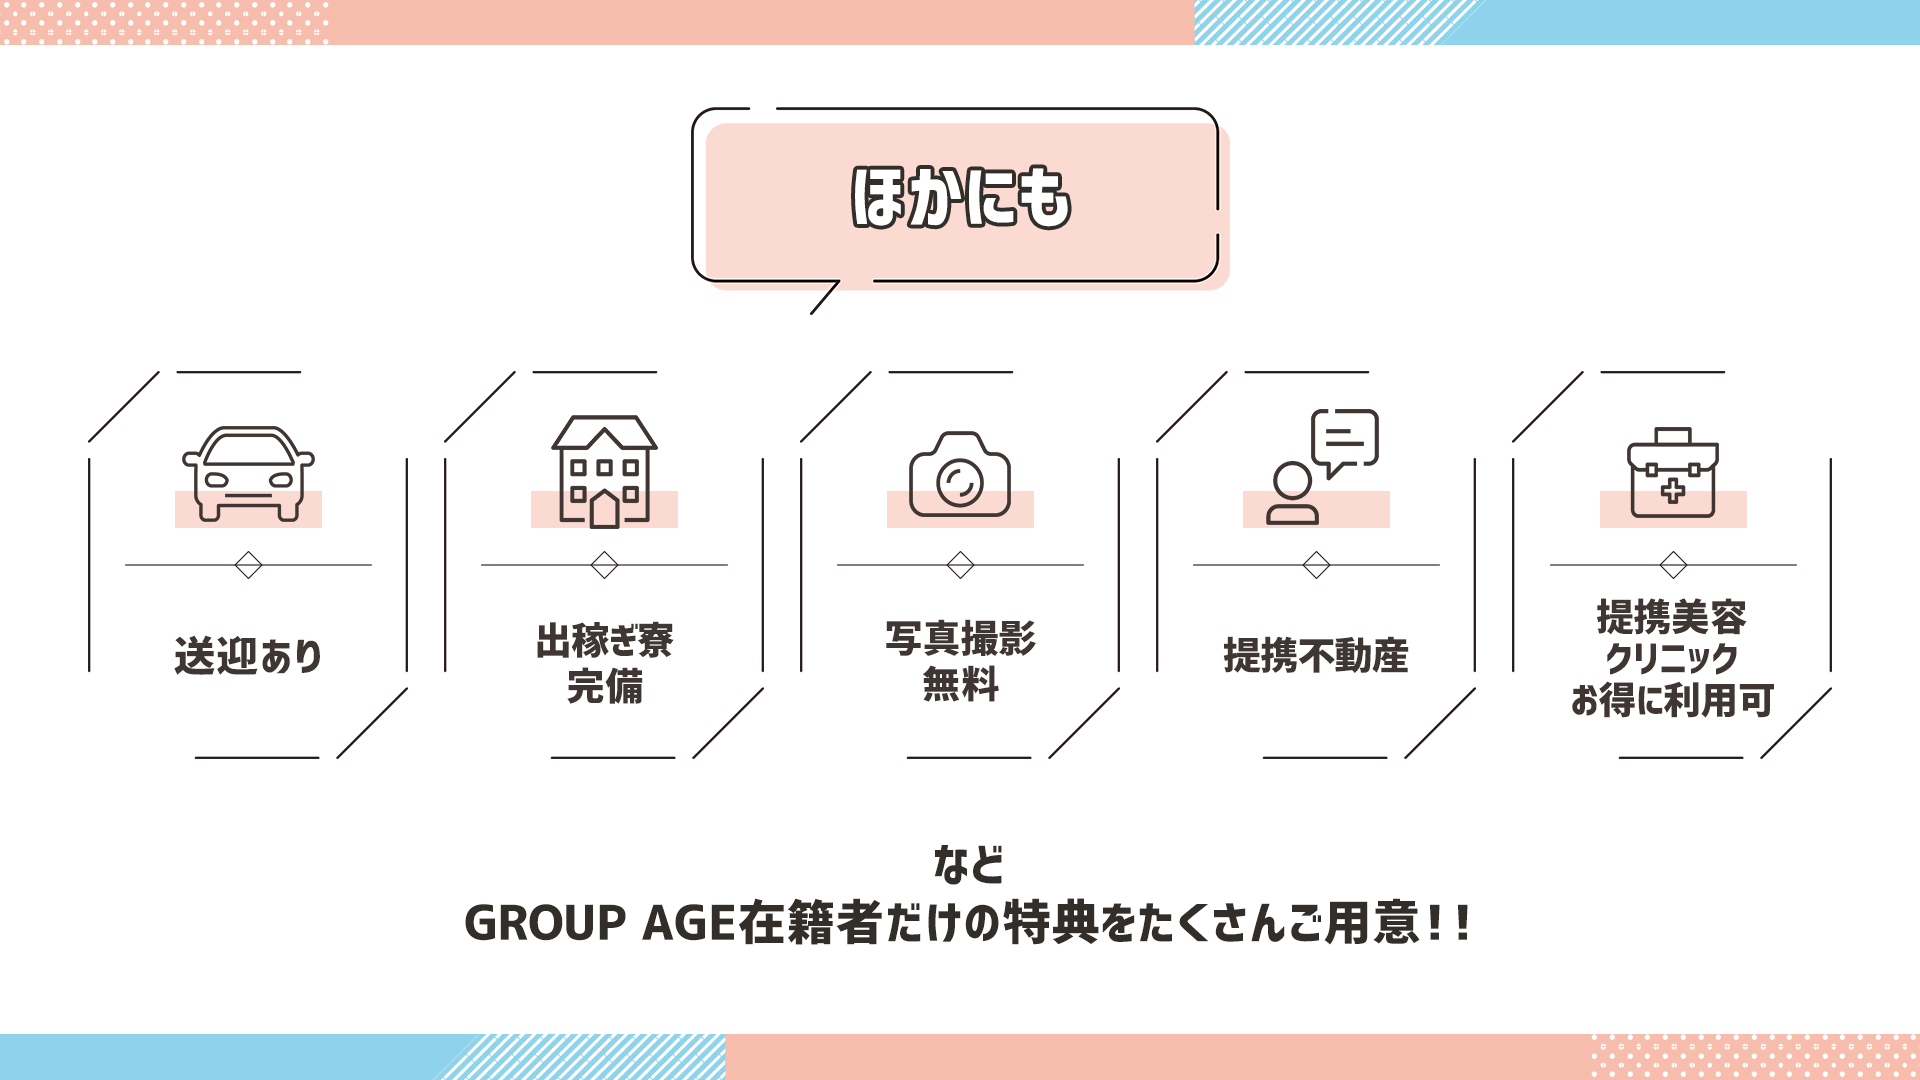 GROUP AGE－グループアージュ ショップ画像10